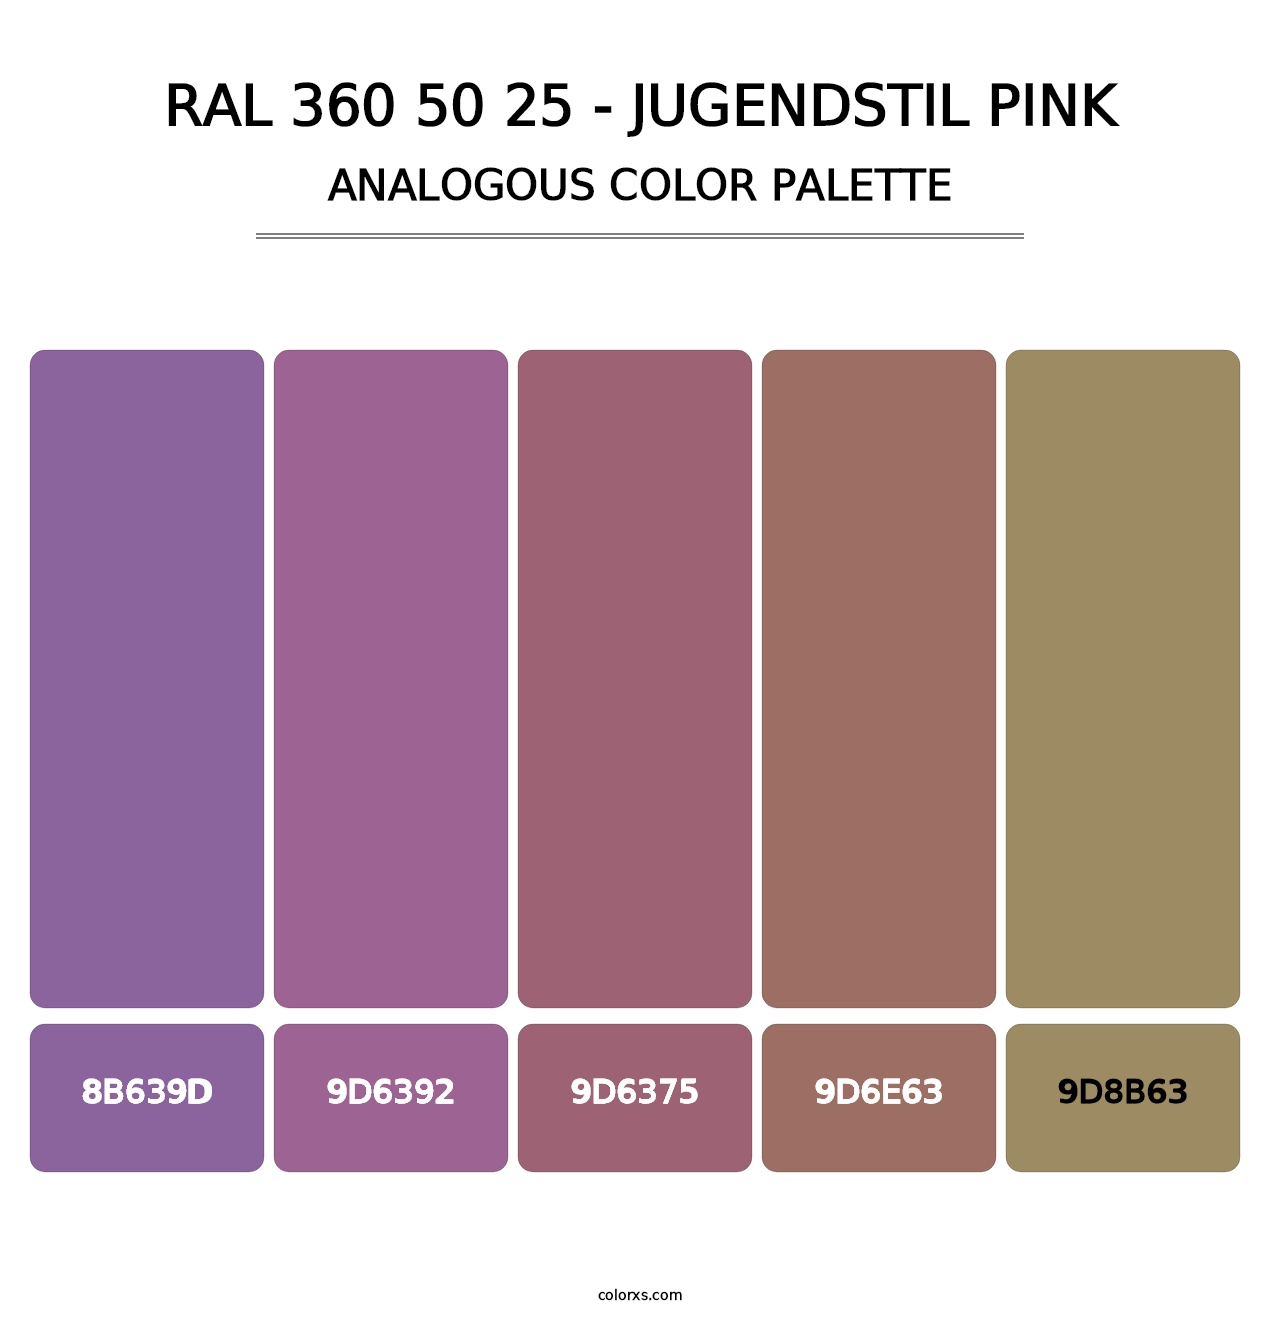 RAL 360 50 25 - Jugendstil Pink - Analogous Color Palette